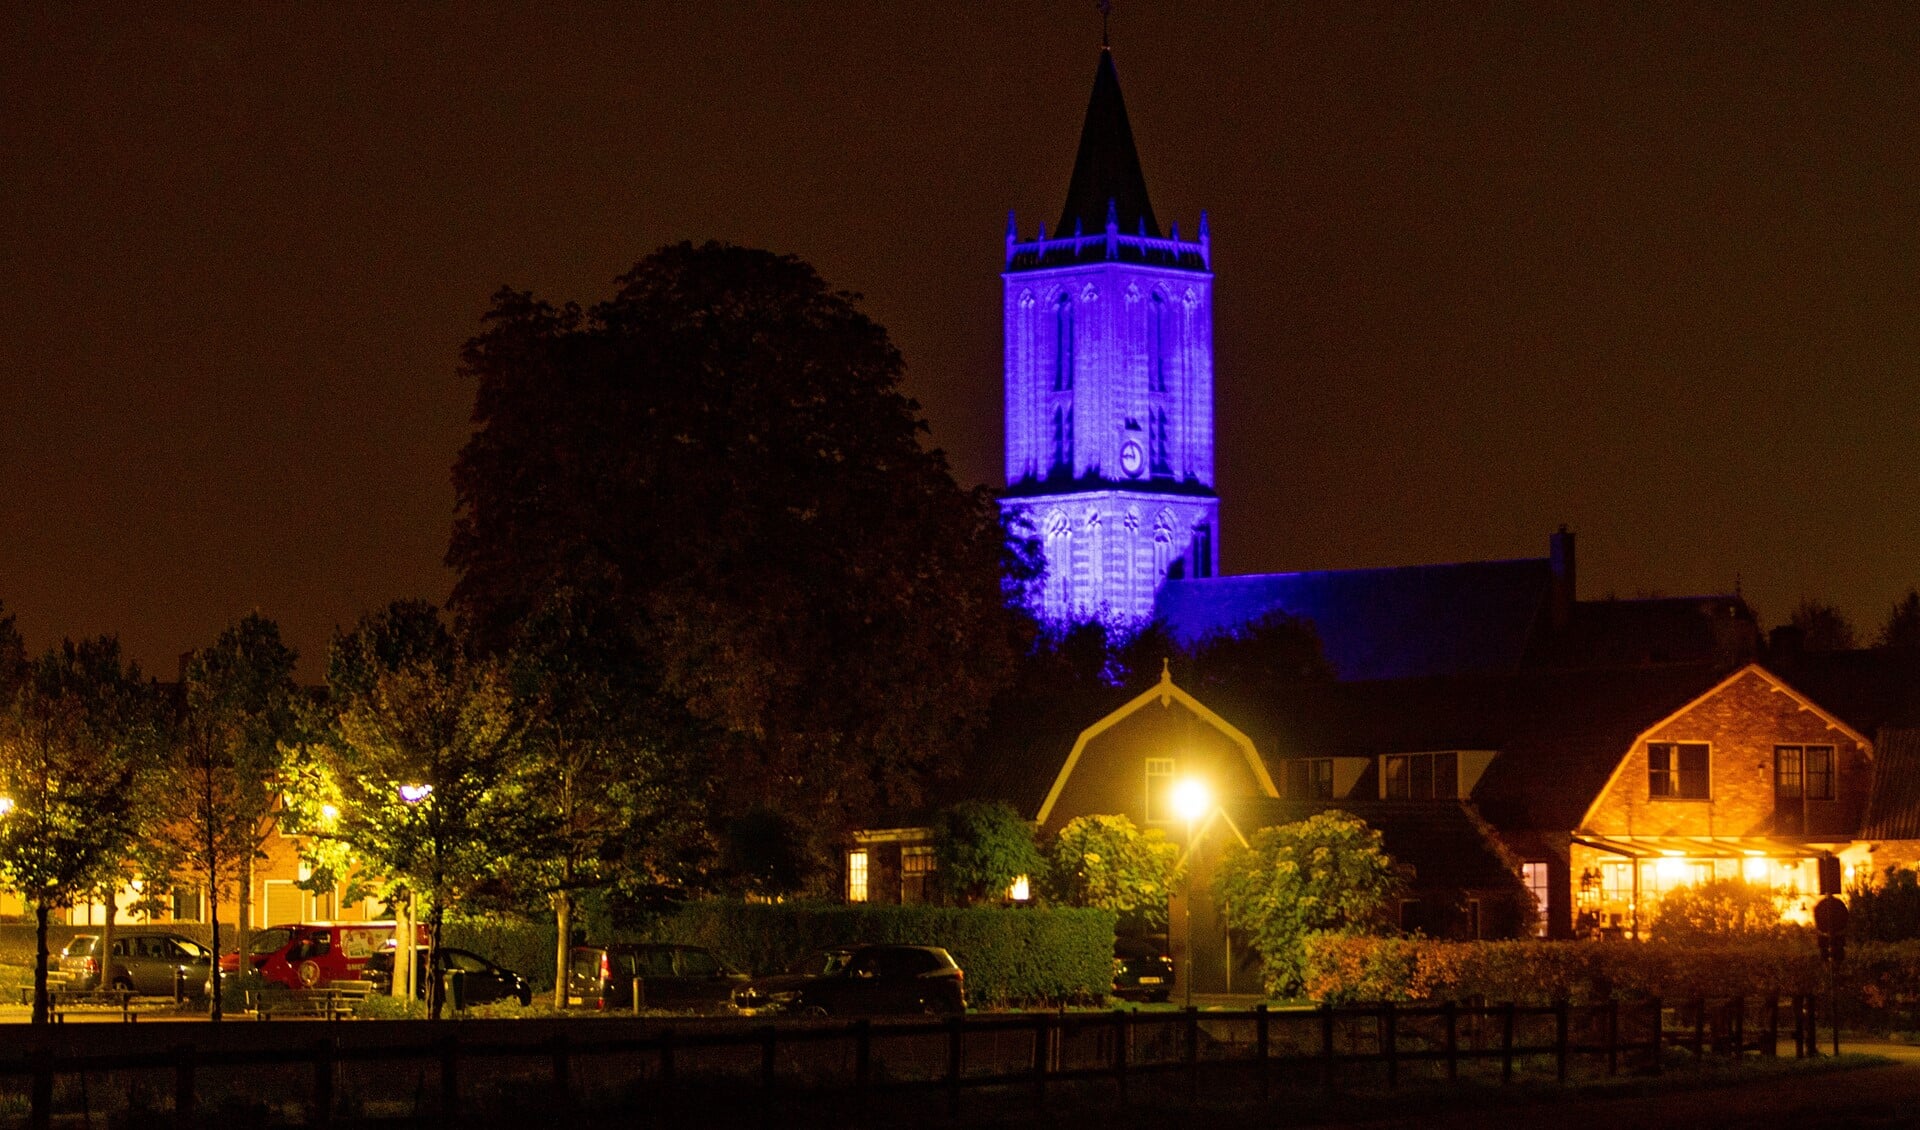 De Hervormde kerk in Eemnes is blauw uitgelicht vanwege het 75-jarig bestaan van de Verenigde Naties.